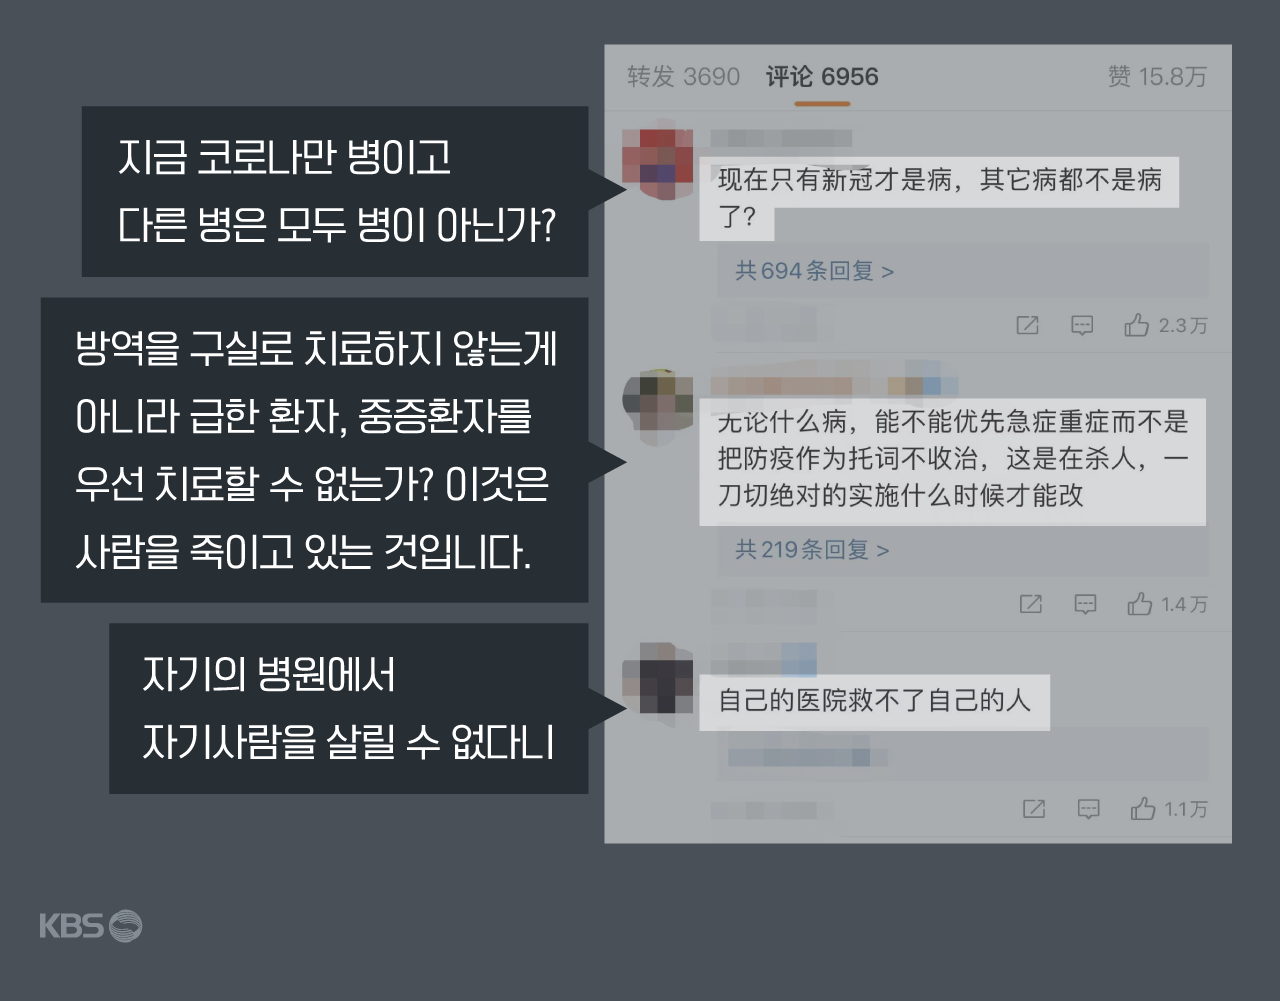 상하이 간호사 사망에 대한 네티즌들의 반응 (출처: 웨이보)